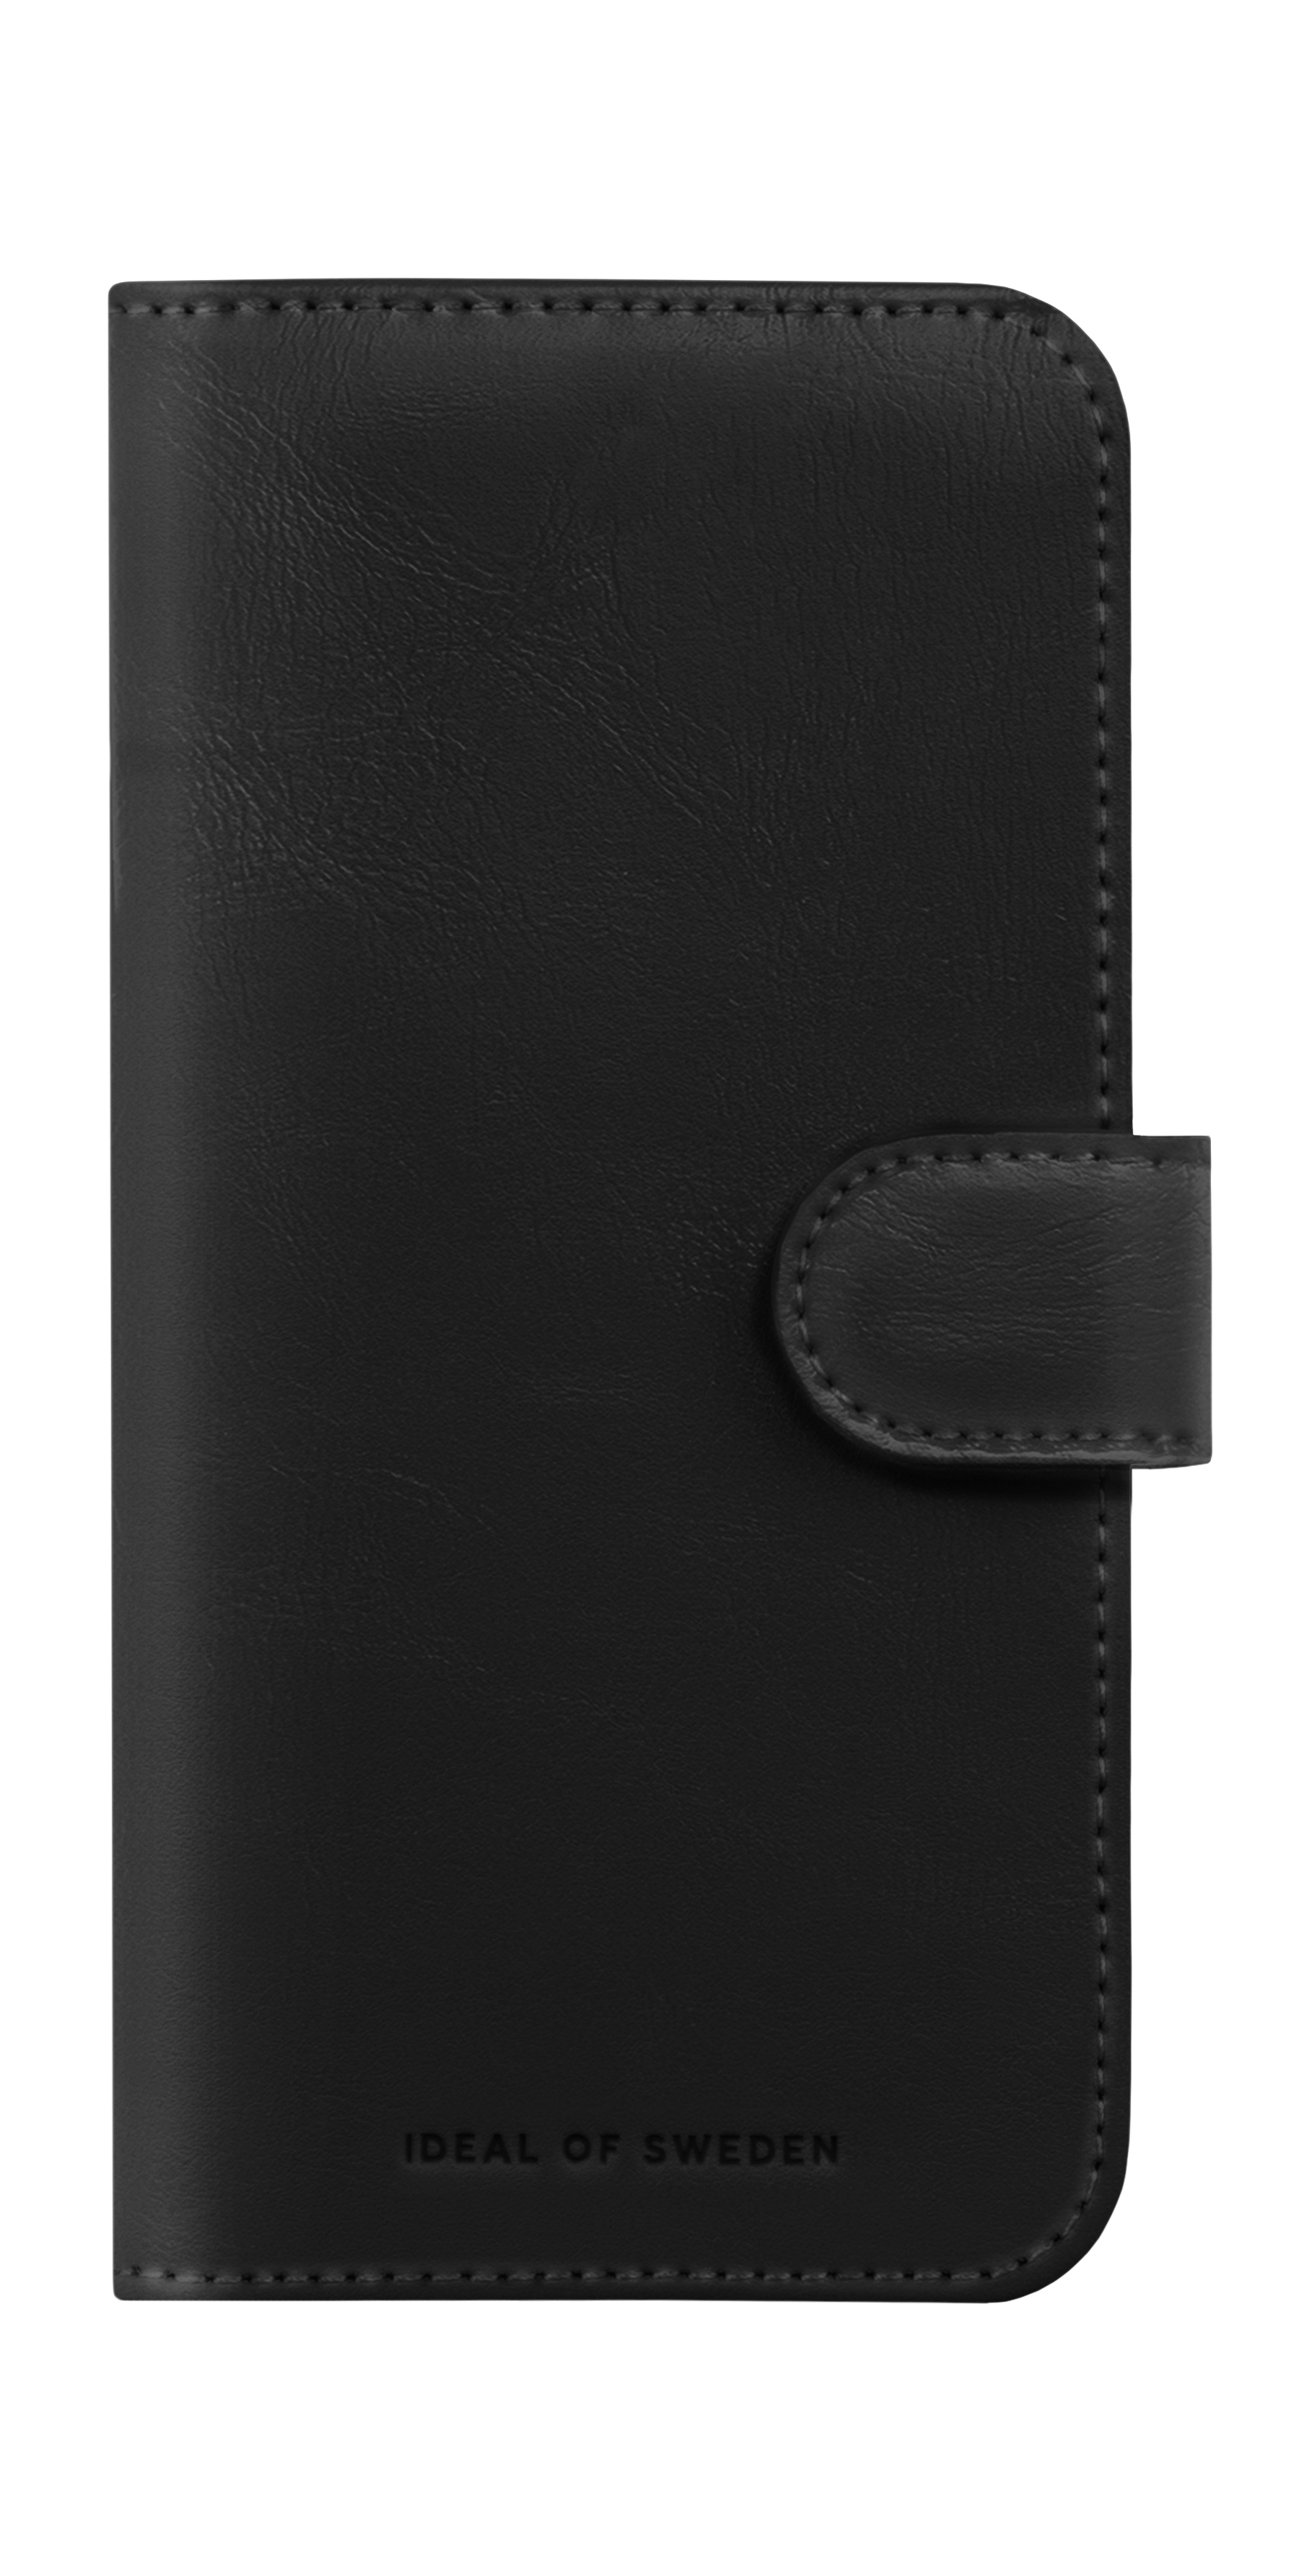 IDEAL OF SWEDEN Magnet Apple, Black iPhone Wallet+, 15, Bookcover